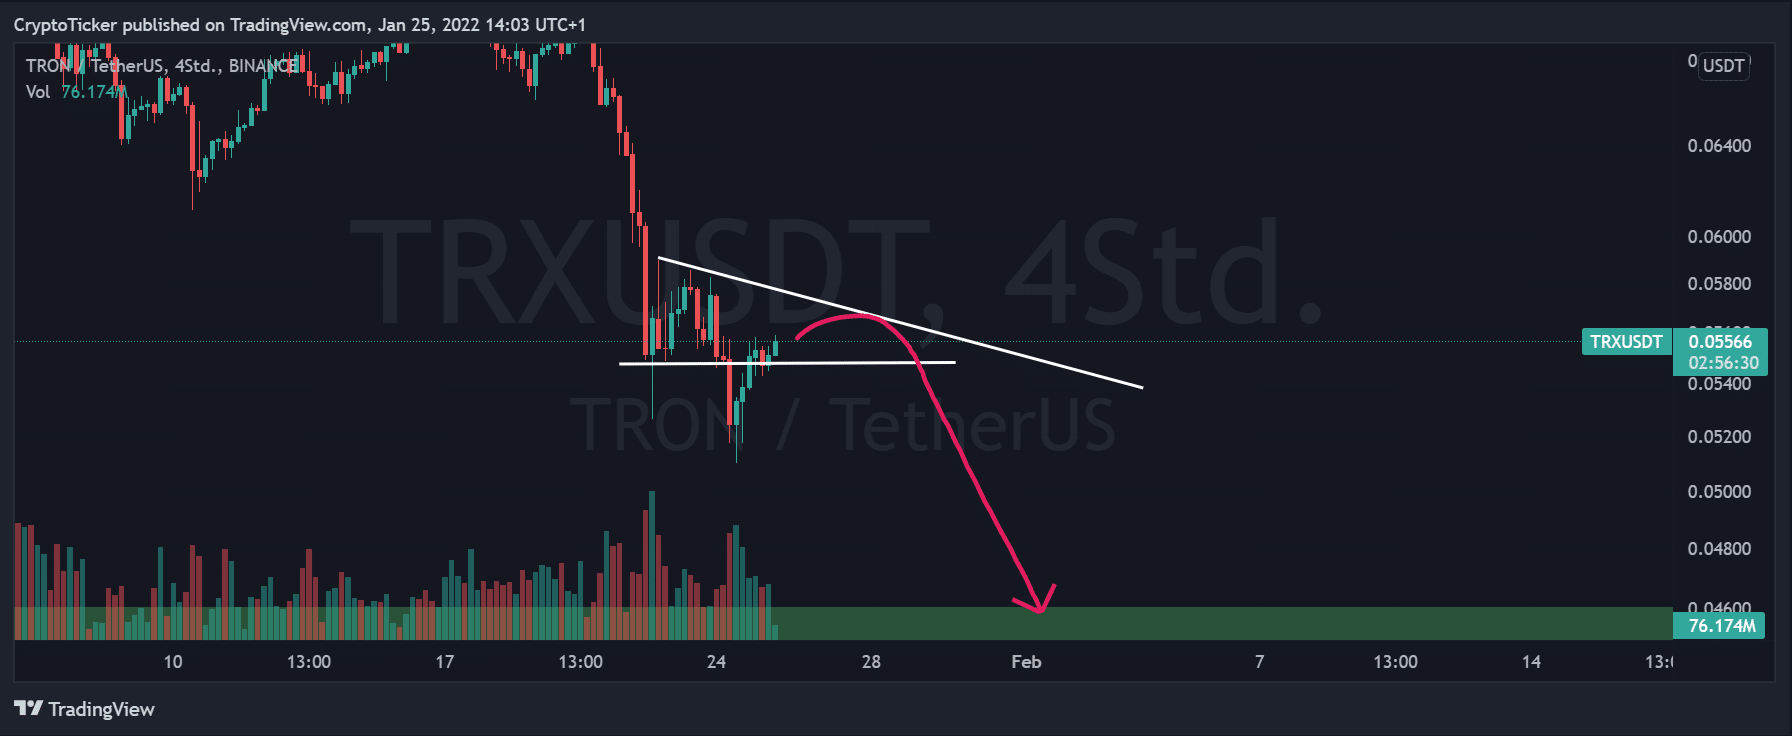 Tron price - TRX/USDT 4-hours chart 